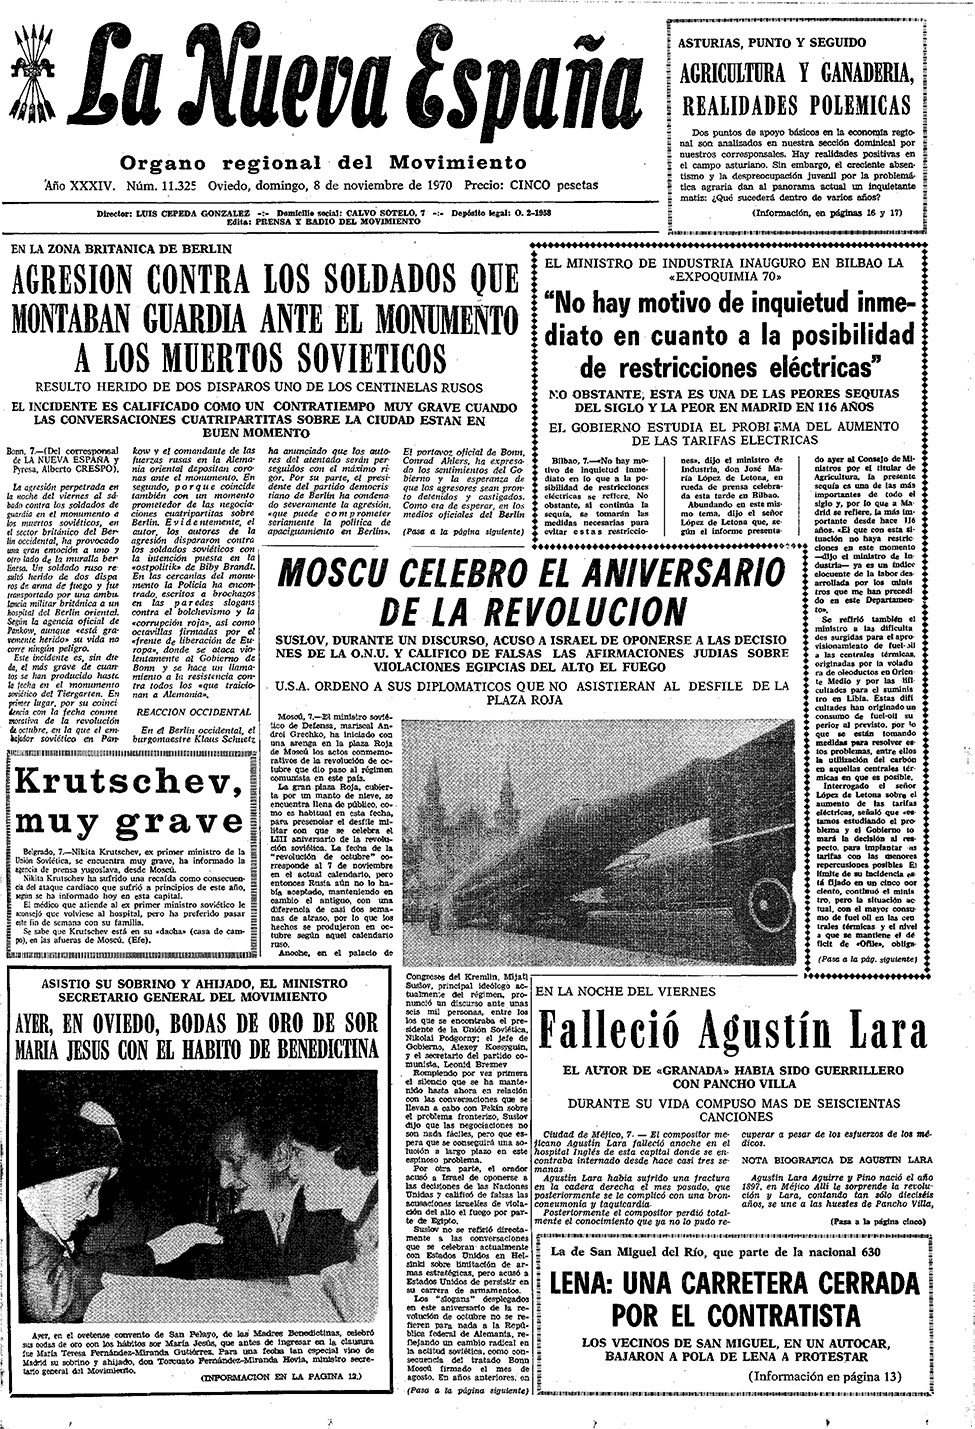 Portada del Domingo, 8 de Noviembre de 1970